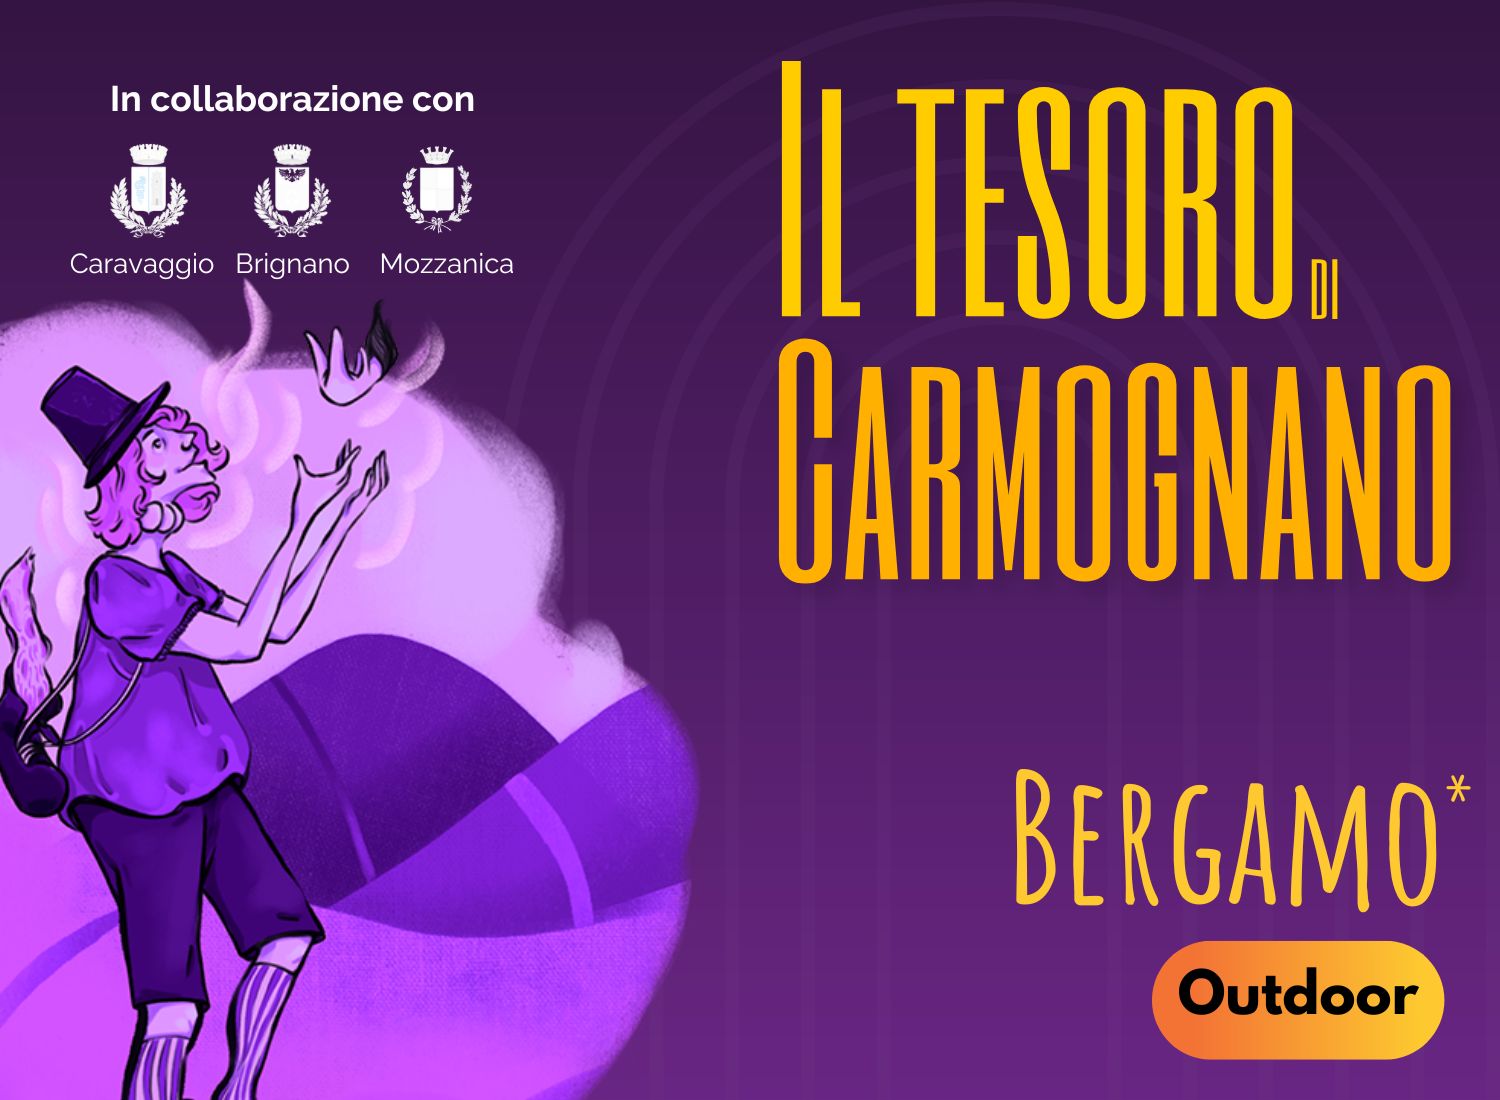 City Escape Bergamo - Carmognano